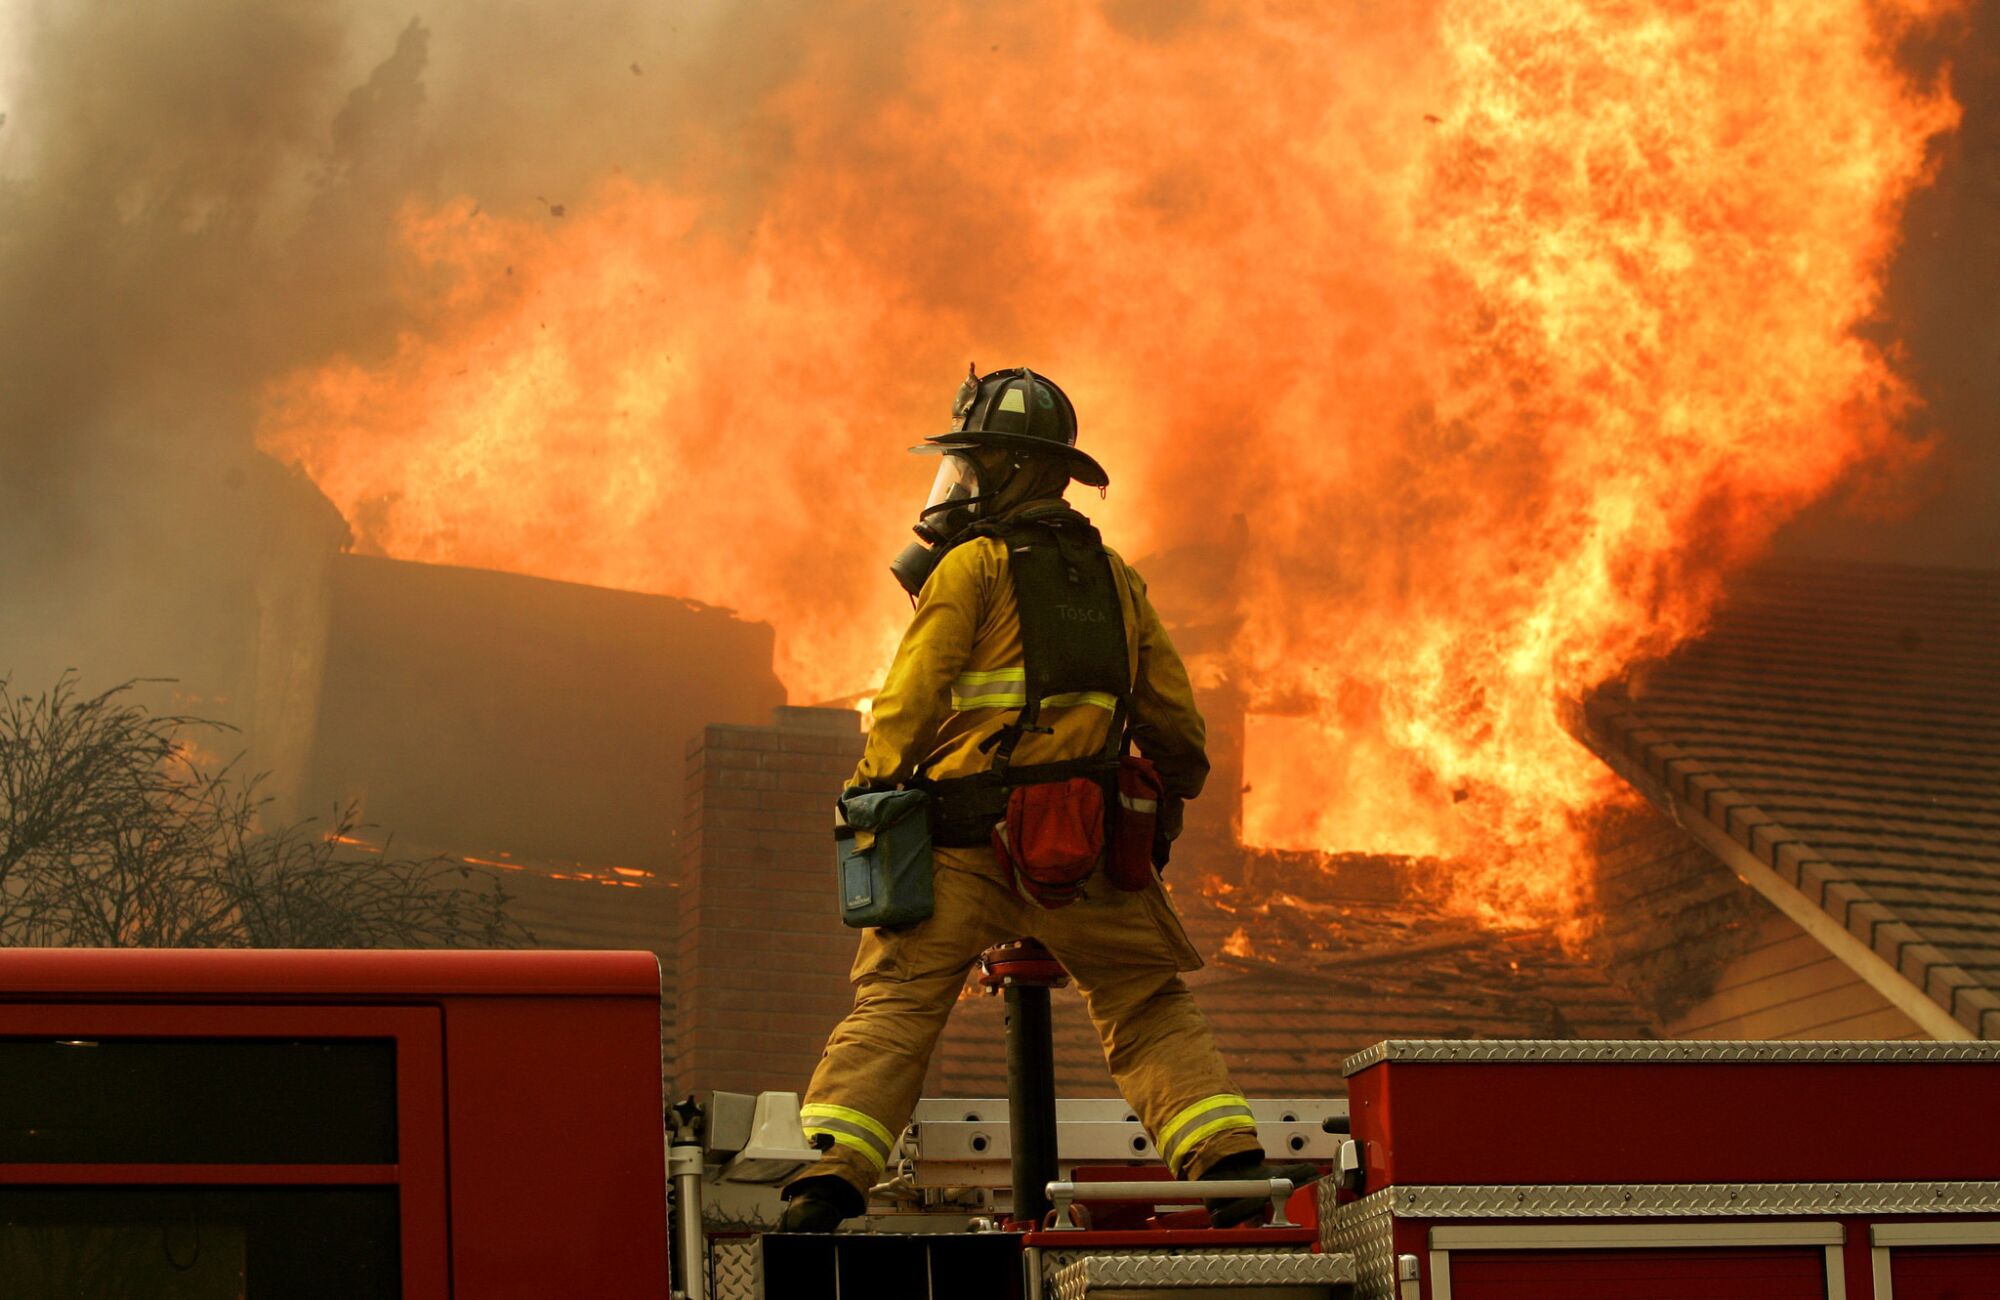 A San Diego firefighter battles a blaze in Rancho Bernardo during a firestorm on Monday, October 22, 2007.